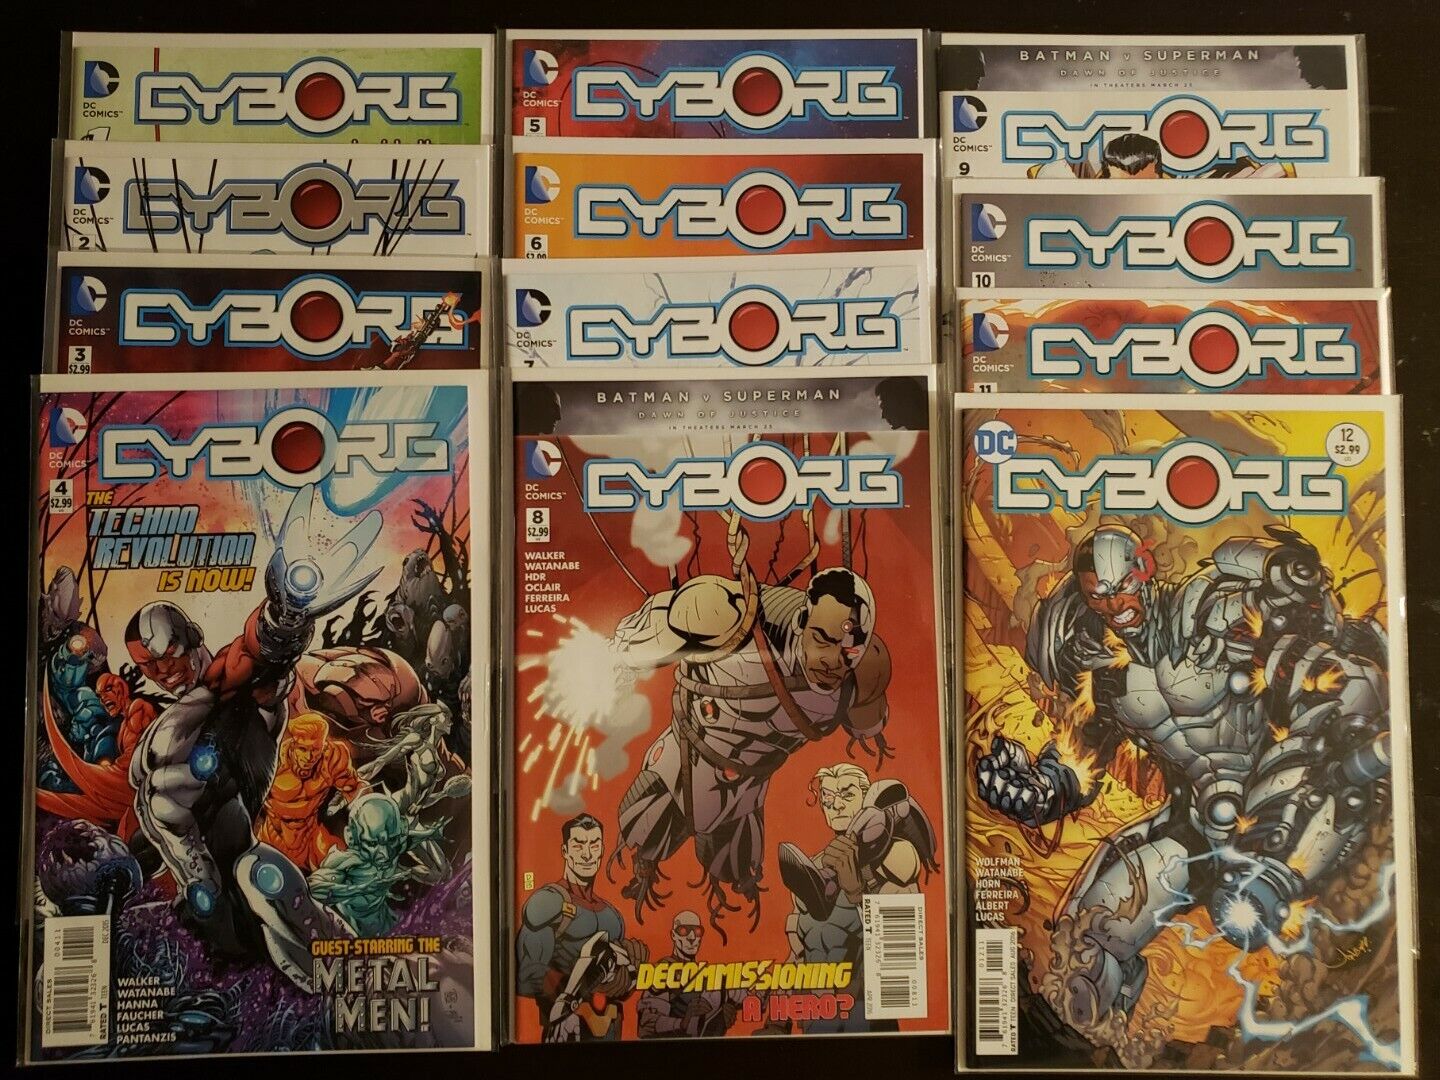 Cyborg (2015-2016, DC Comics) New 52 Series - 12 Issues